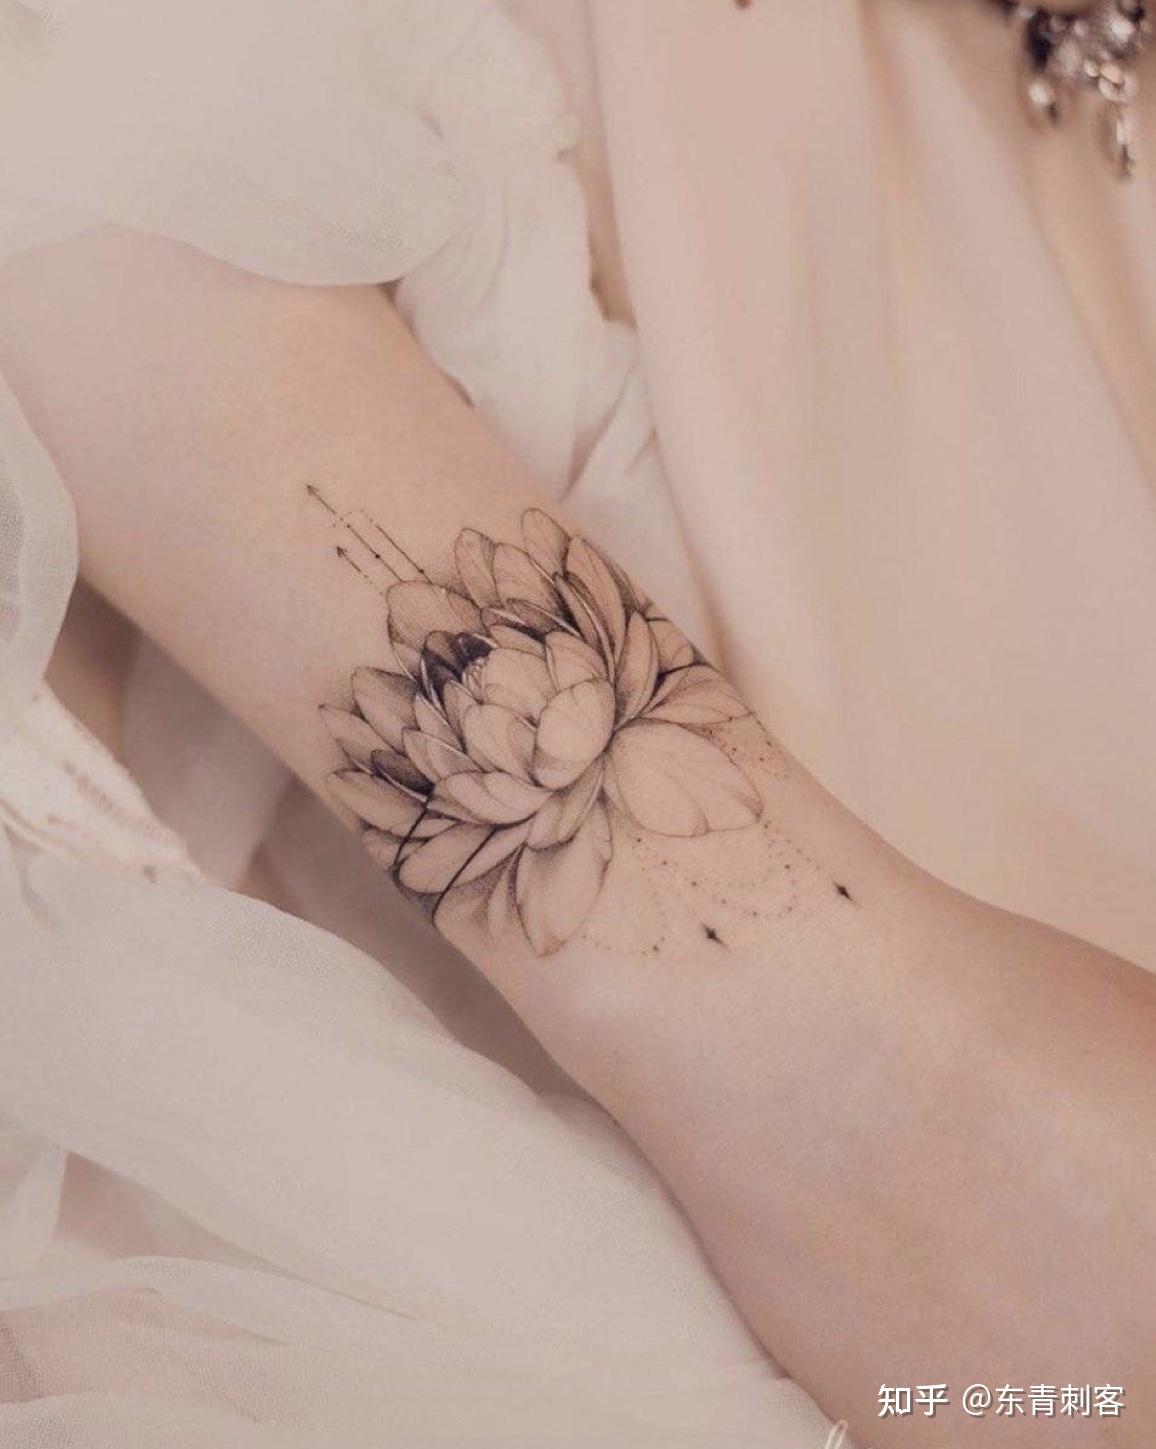 大腿黑灰小清新花卉纹身图案